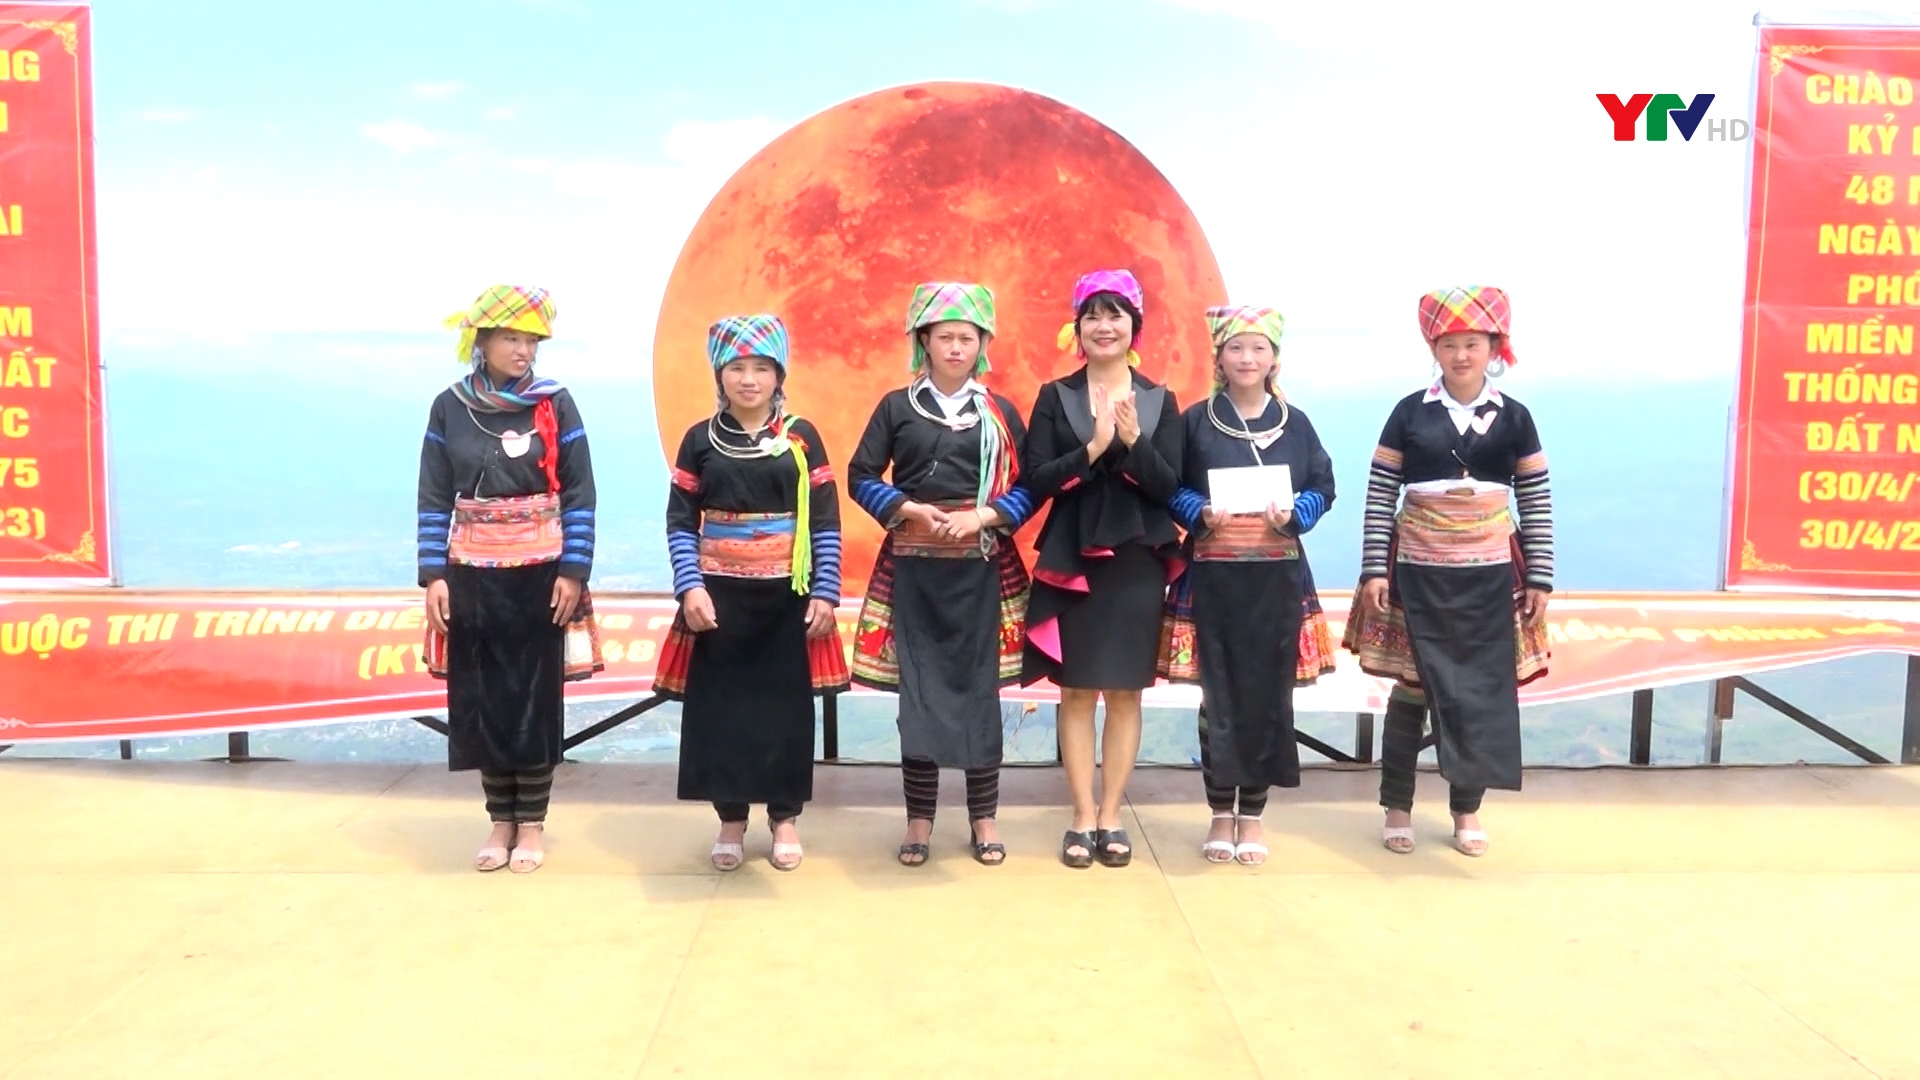 30 thí sinh tham gia Cuộc thi "Trình diễn trang phục Mông" tại xã Phình Hồ, huyện Trạm Tấu